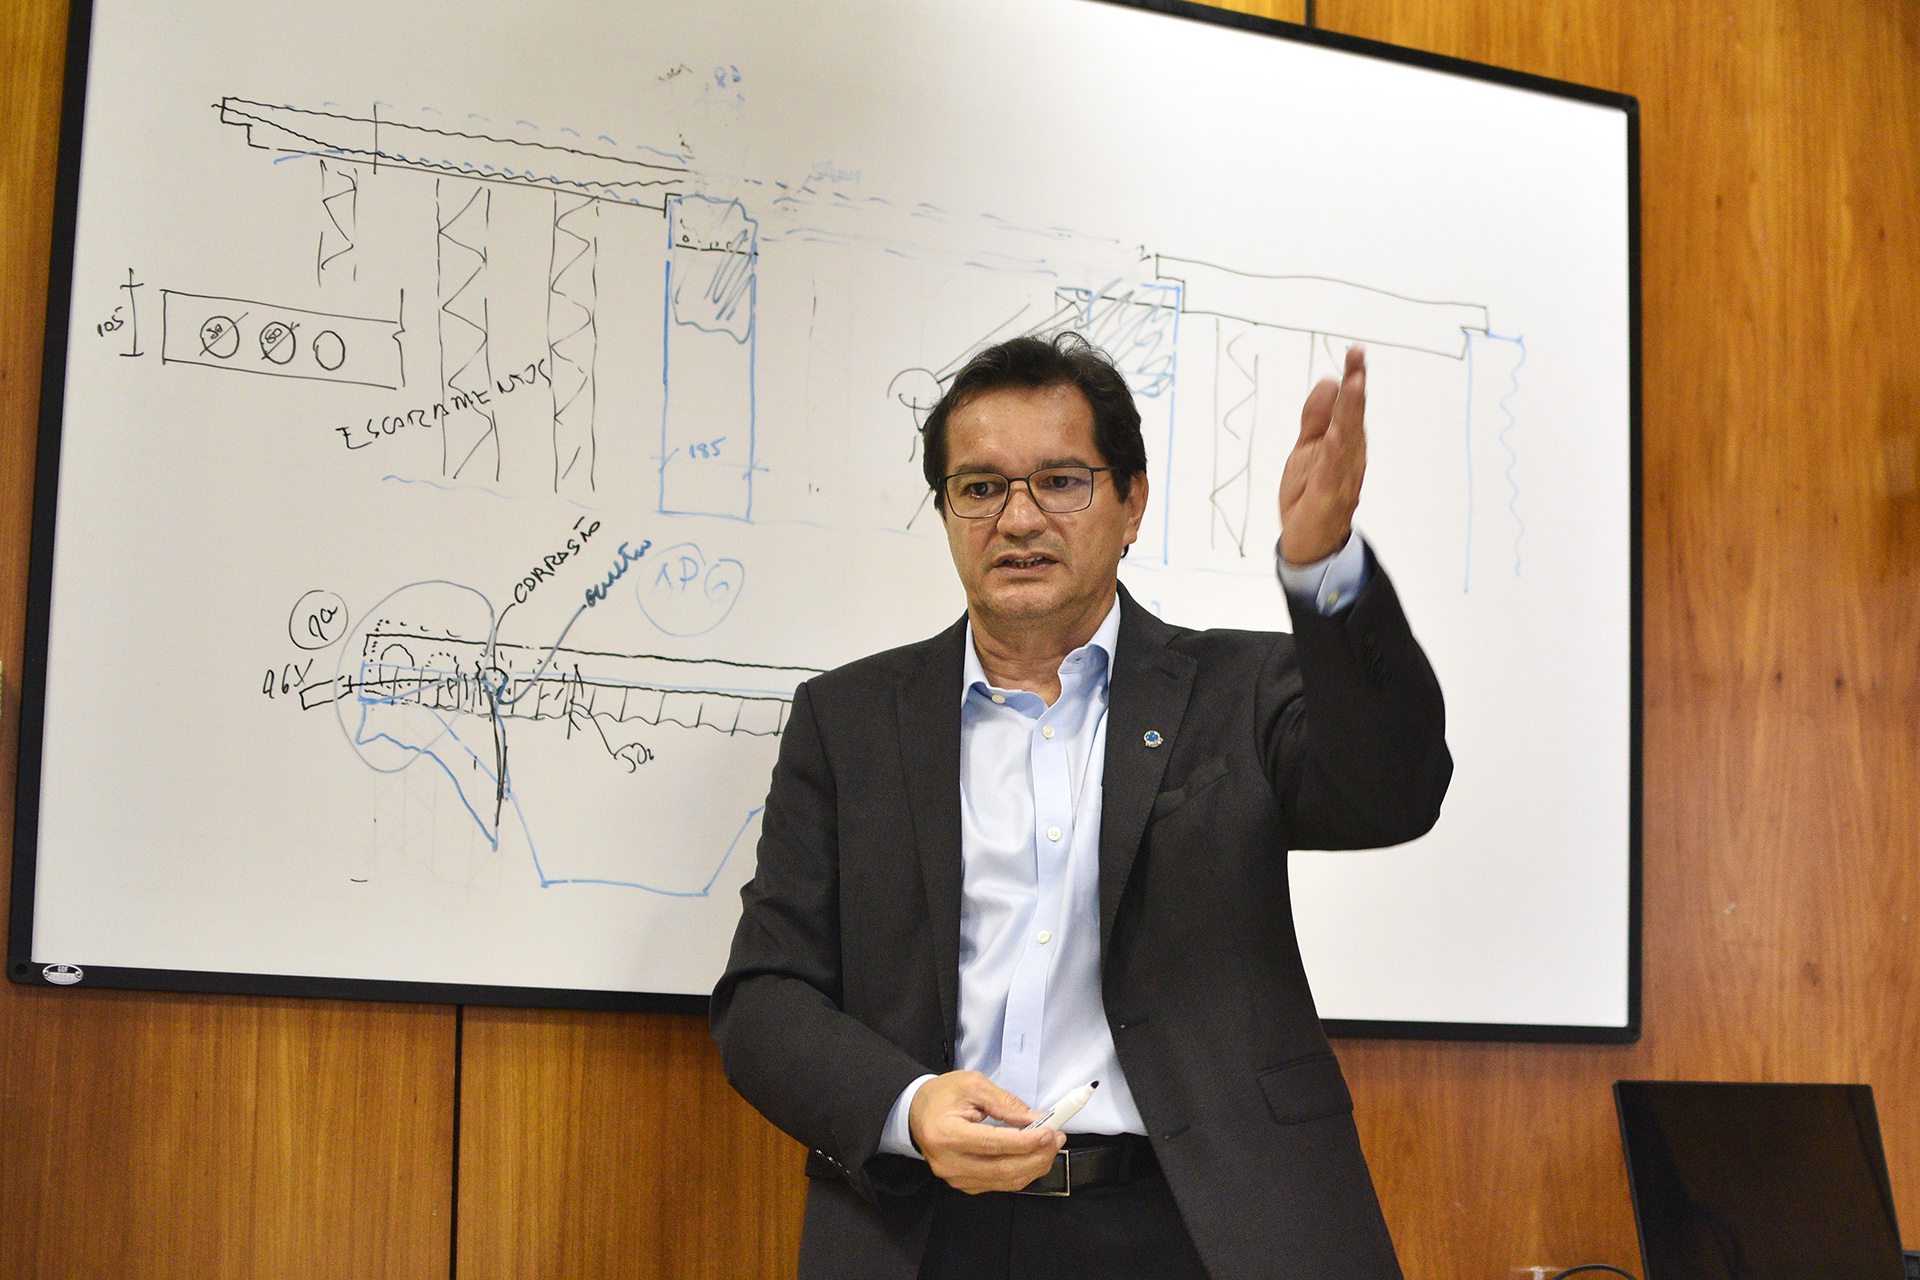 O levantamento feito pelo engenheiro Pedro de Almeida, professor da Universidade de São Paulo (USP) há 29 anos, aponta para a não demolição do tabuleiro central.